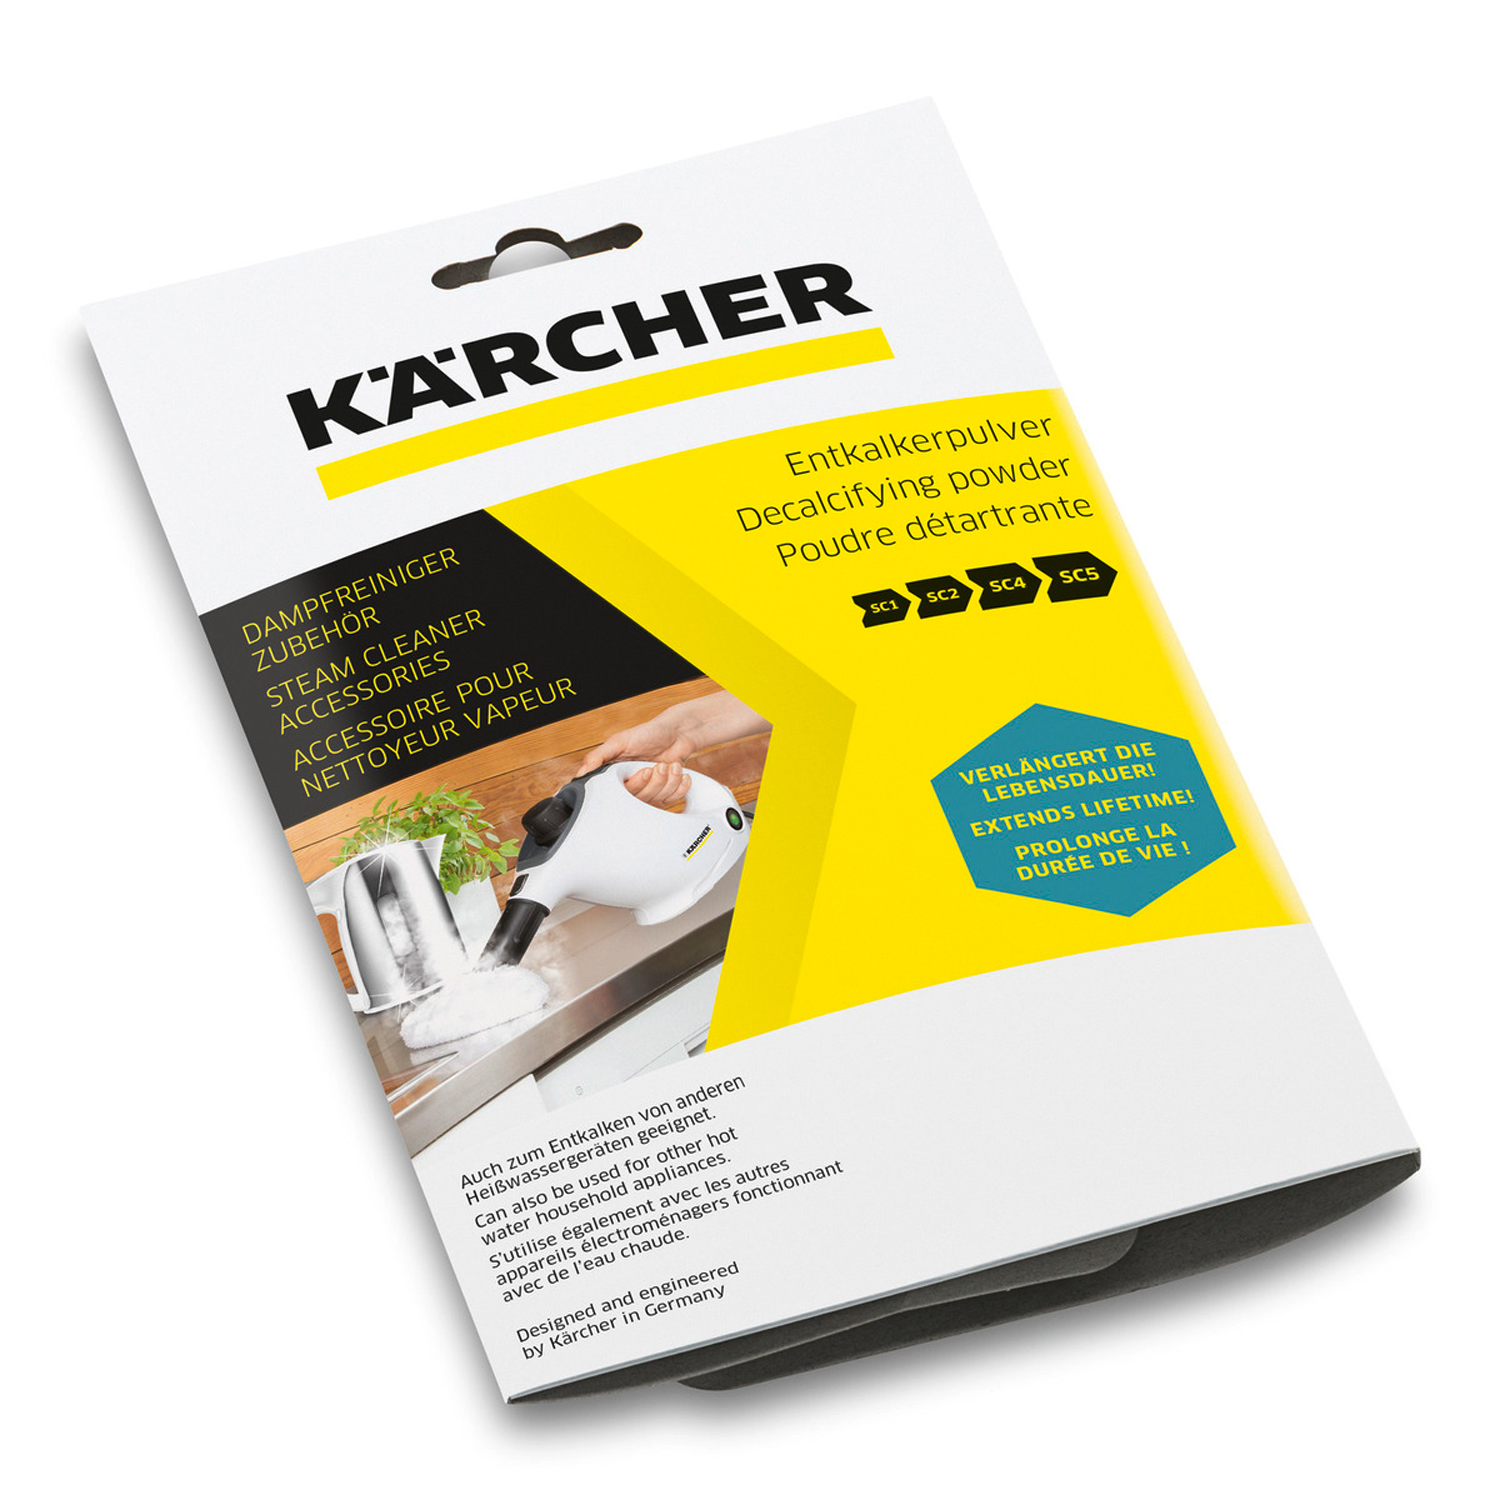 Karcher Vapor SG 4/4 Professional